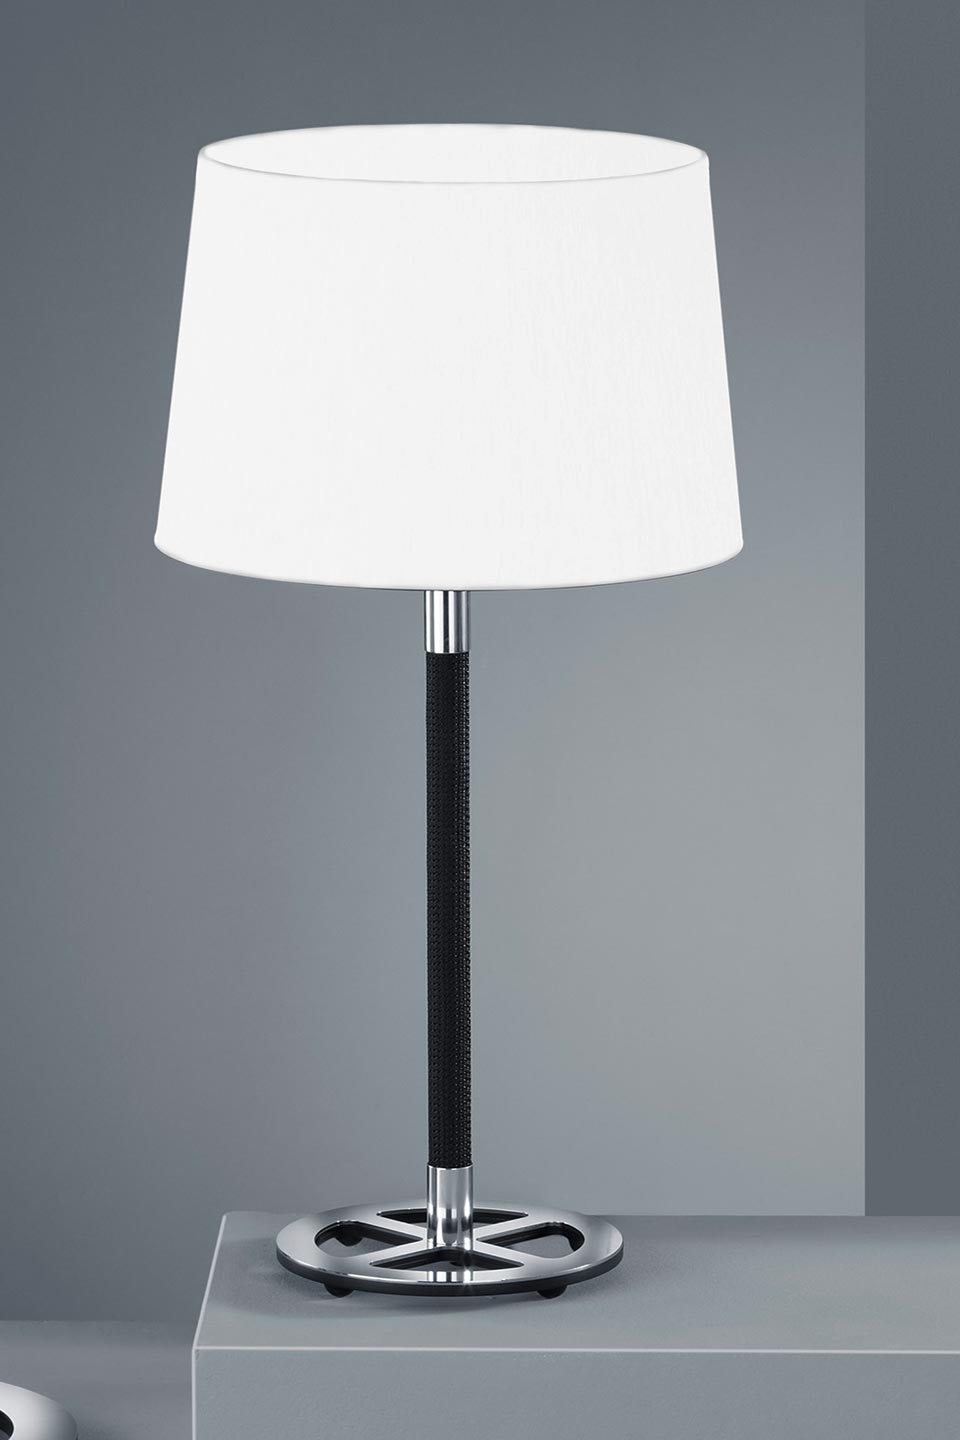 Lampe de chevet sans fil au design industriel en métal noir ou blanc